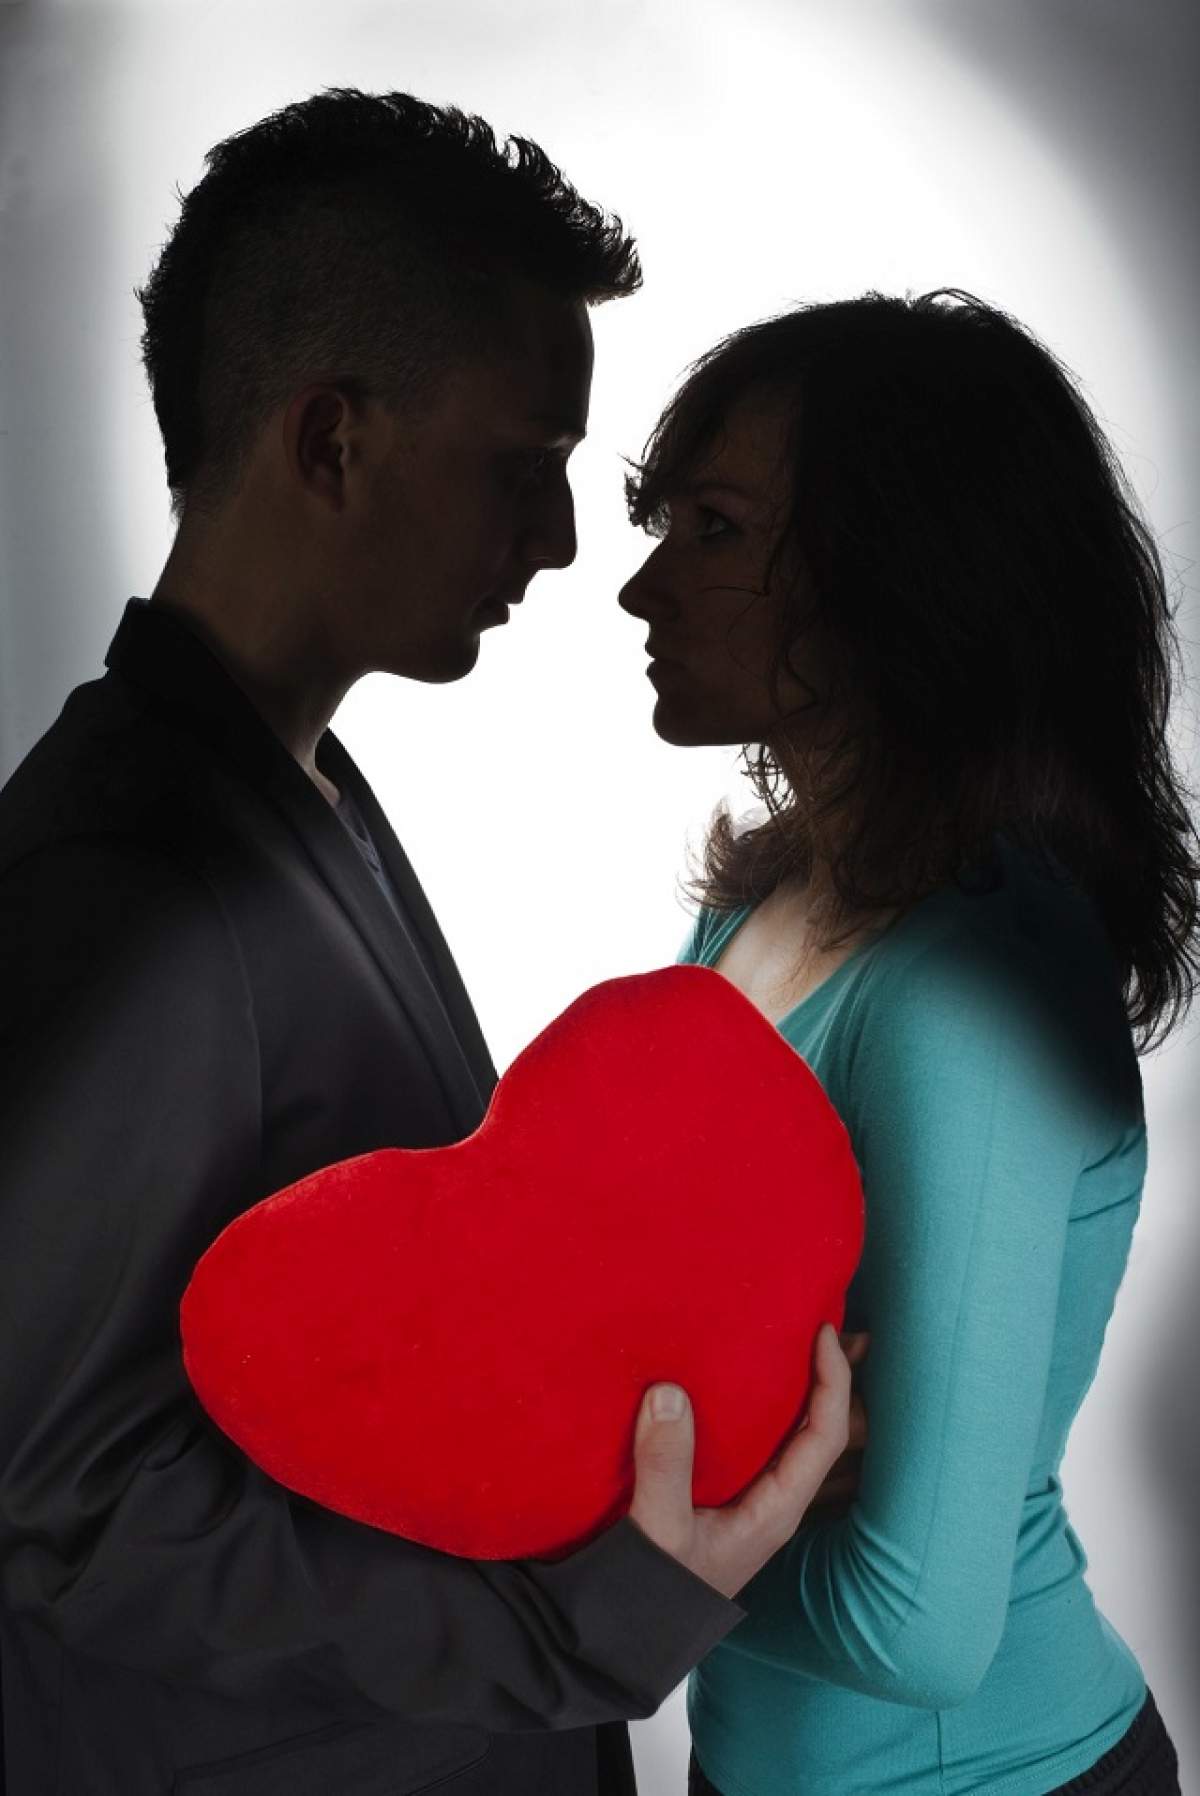 ÎNTREBAREA ZILEI - VINERI: Cine spune primul "Te iubesc" în relaţie?